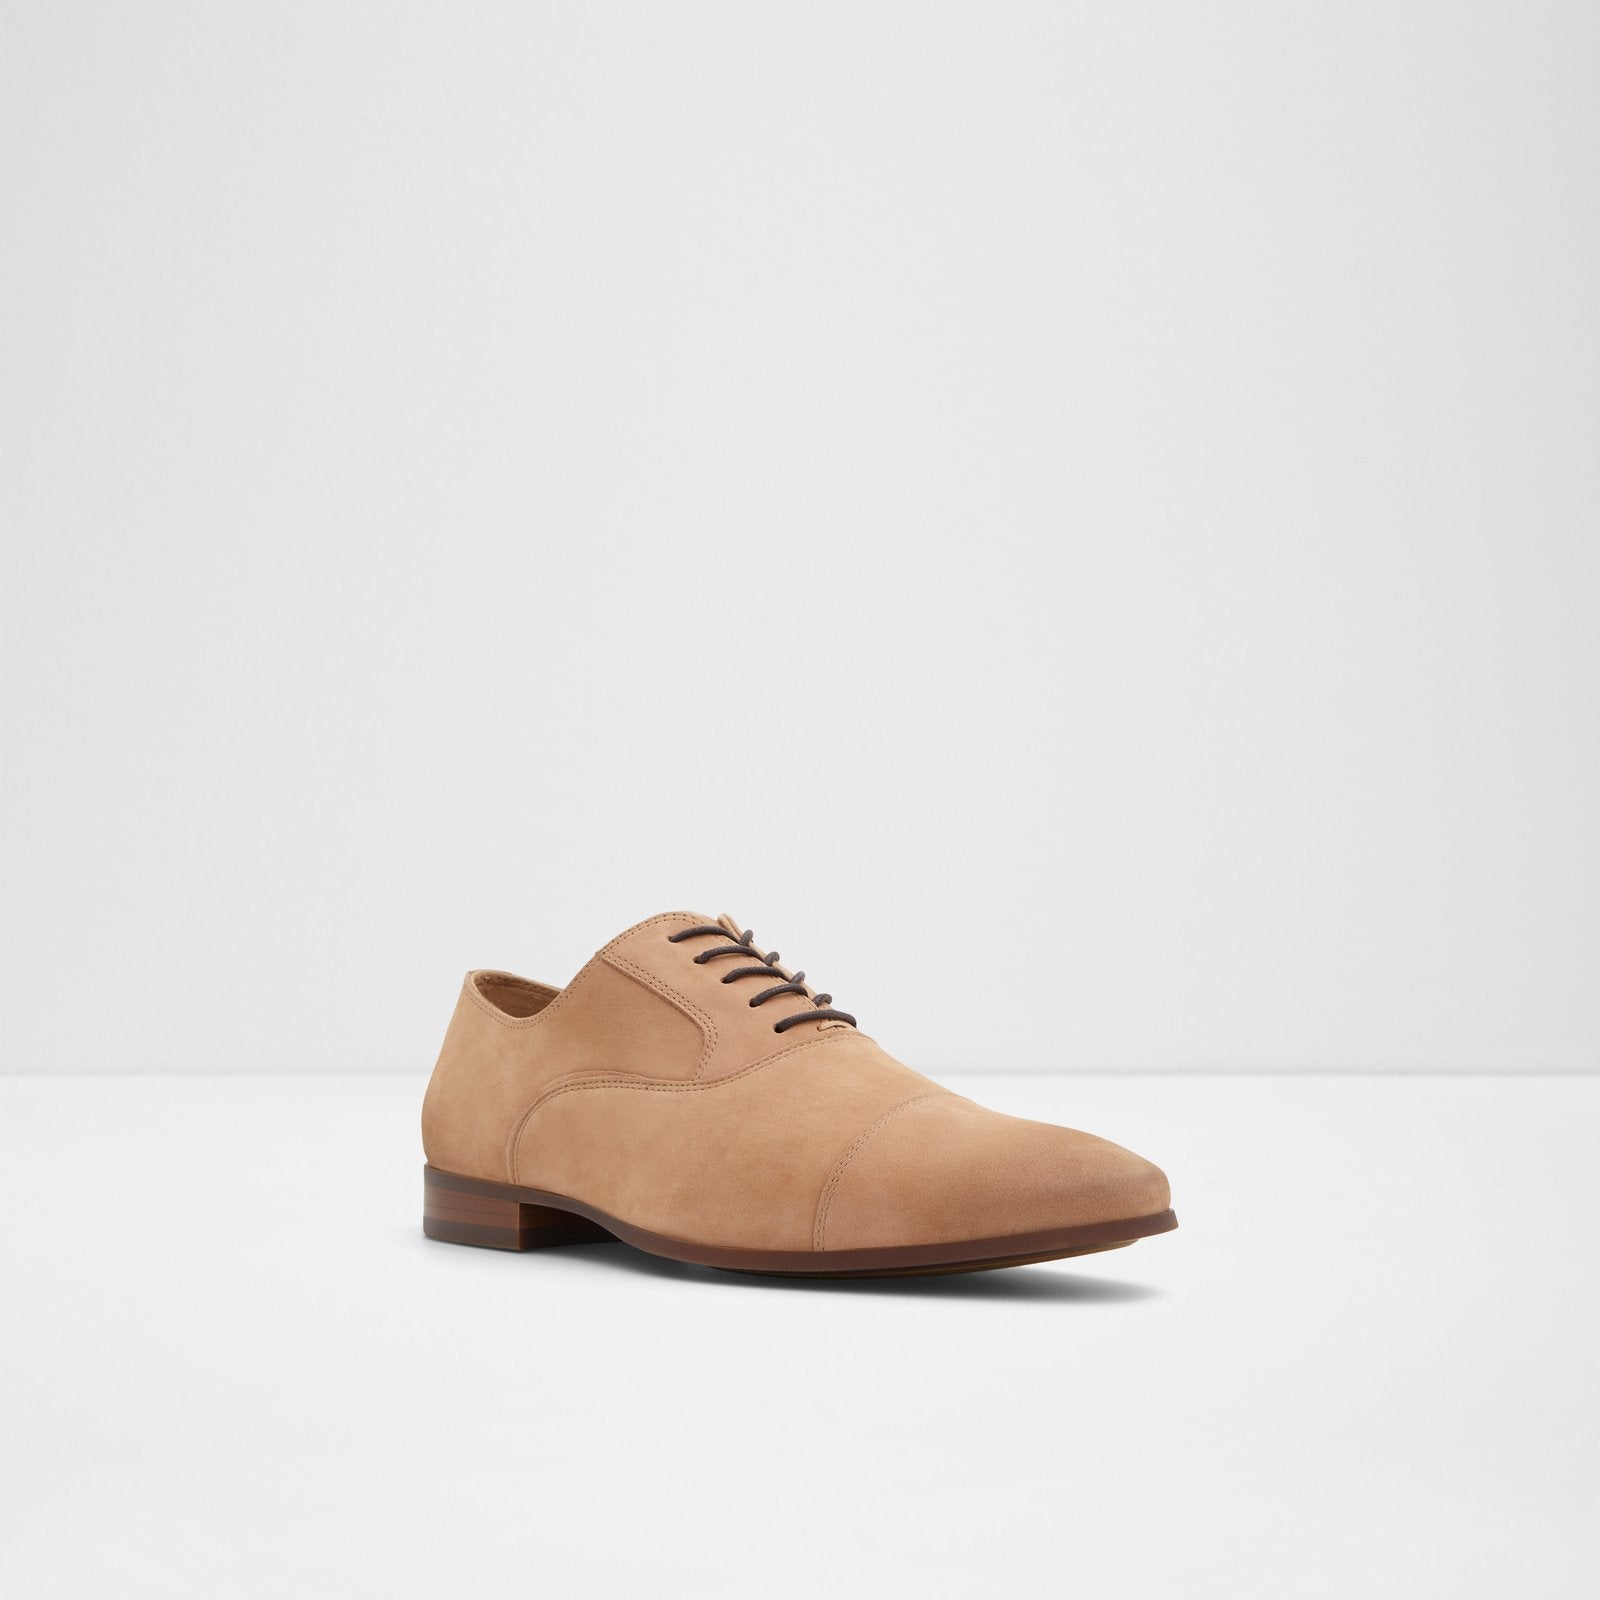 Aldo Men's Lace Up Oxford Shoes Albeck (Light Brown) – ALDO Shoes UK